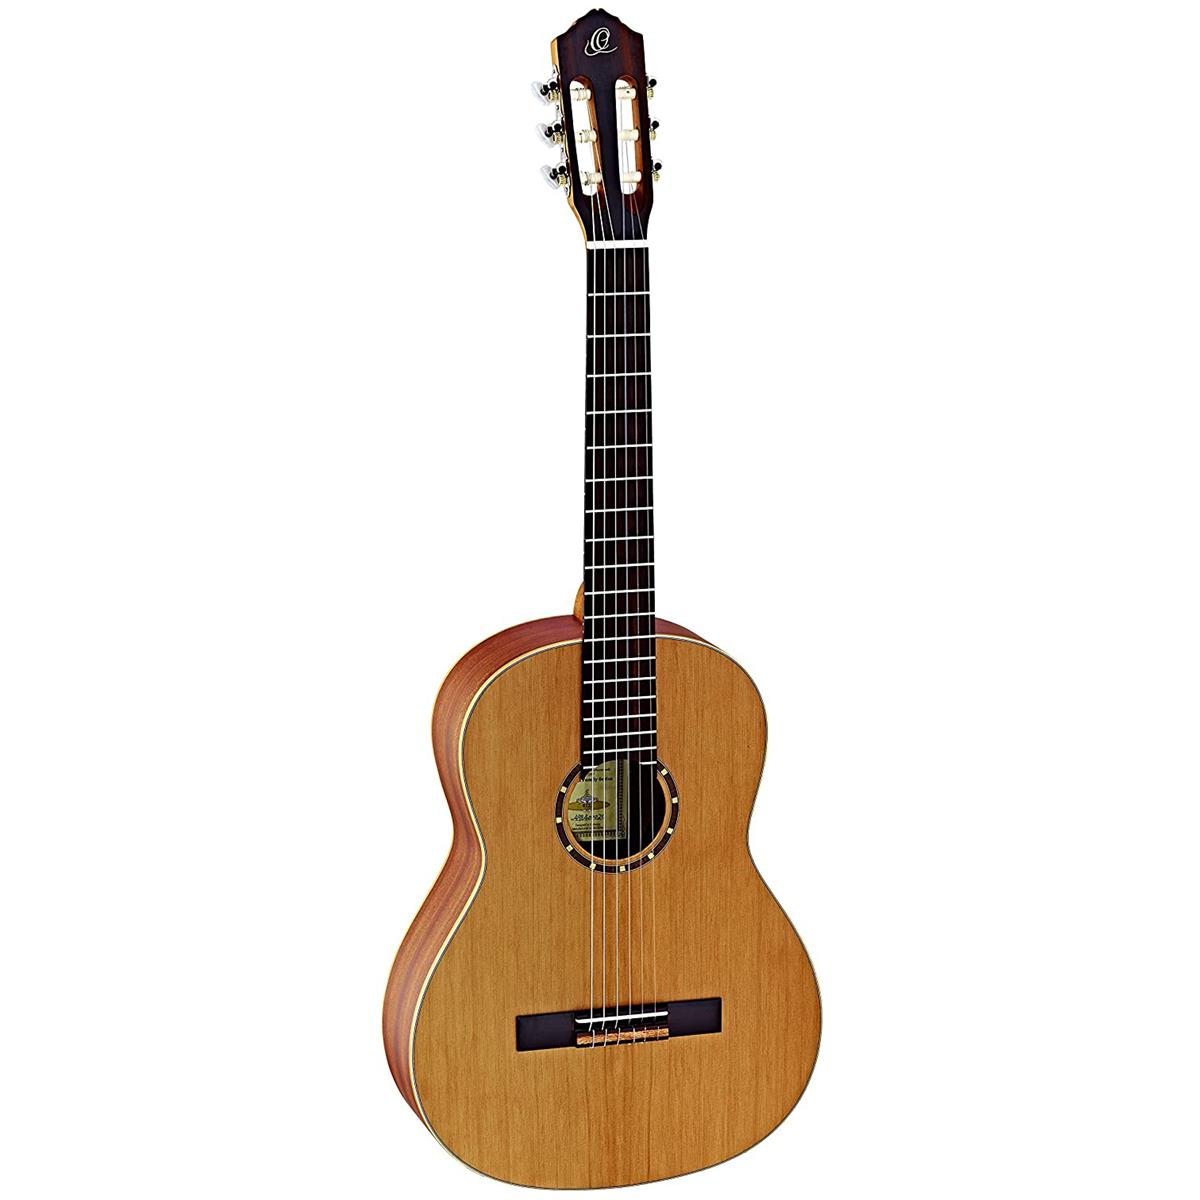 Image of Ortega Guitars R122 Family Series Cedar Top Acoustic Guitar